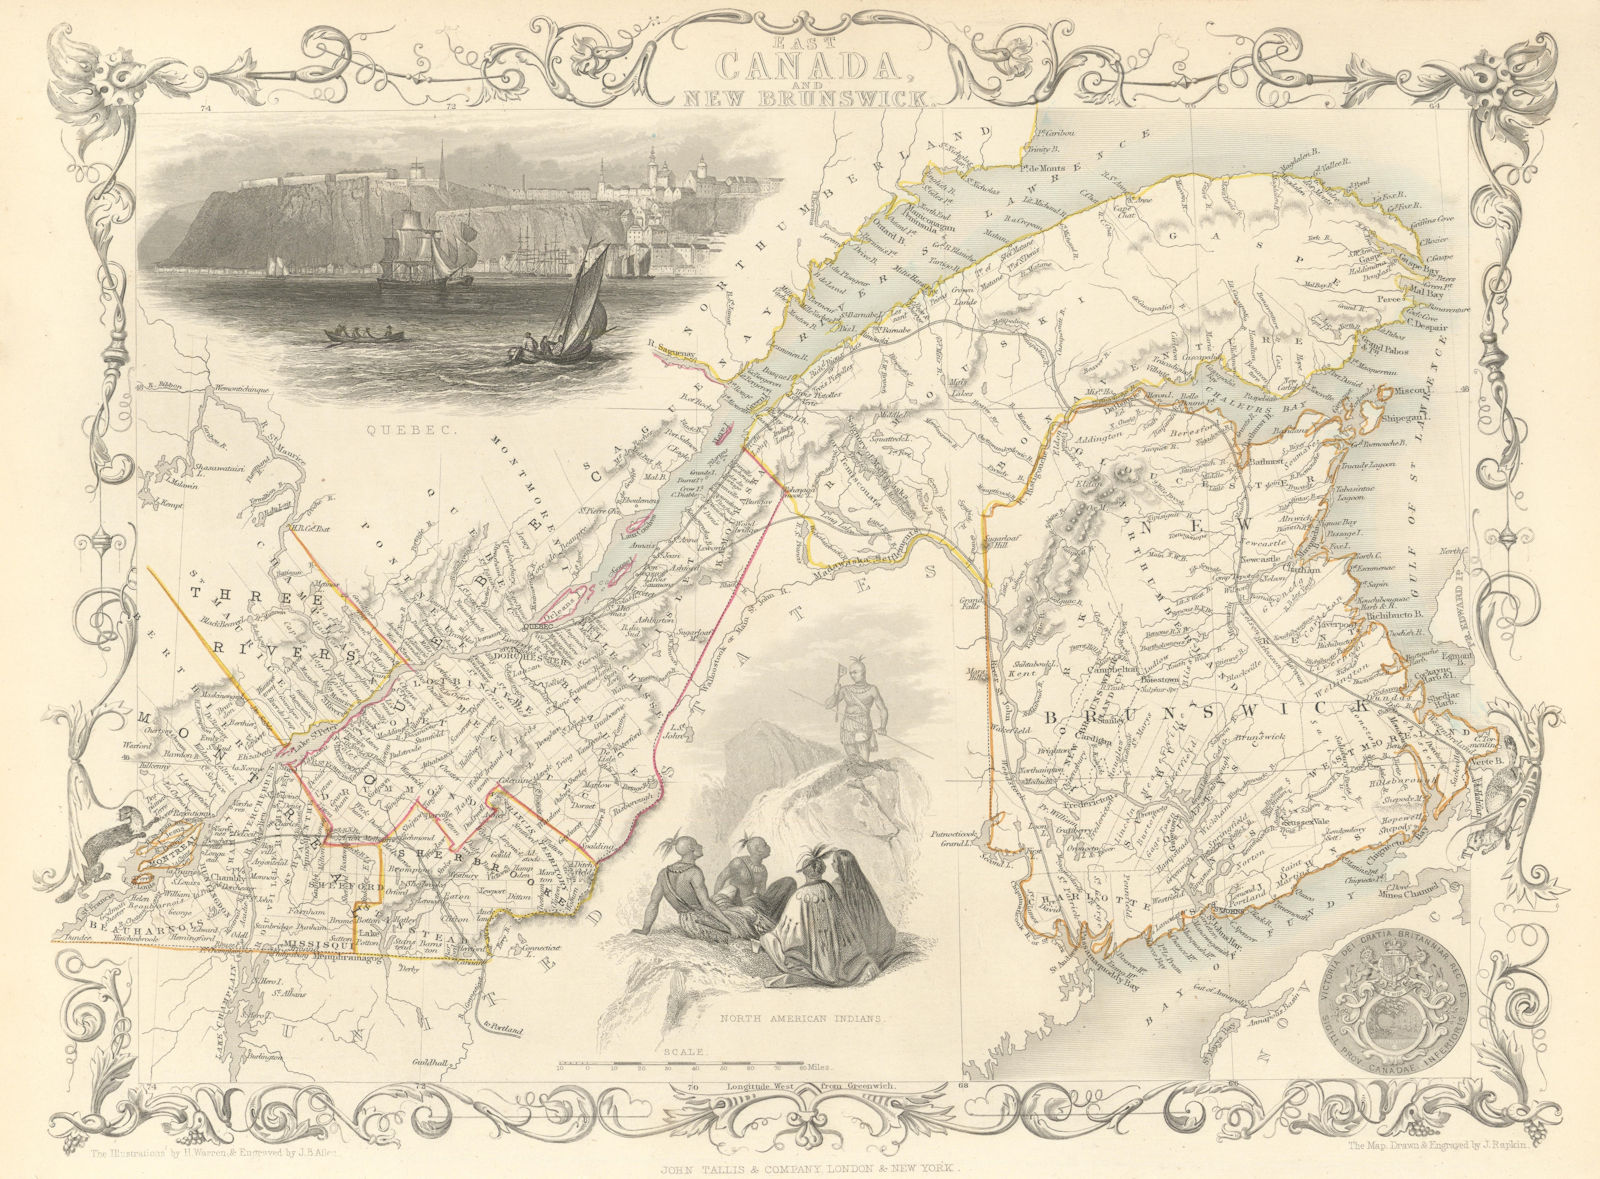 EAST CANADA & NEW BRUNSWICK'. Quebec. Québec city view. TALLIS/RAPKIN 1851 map